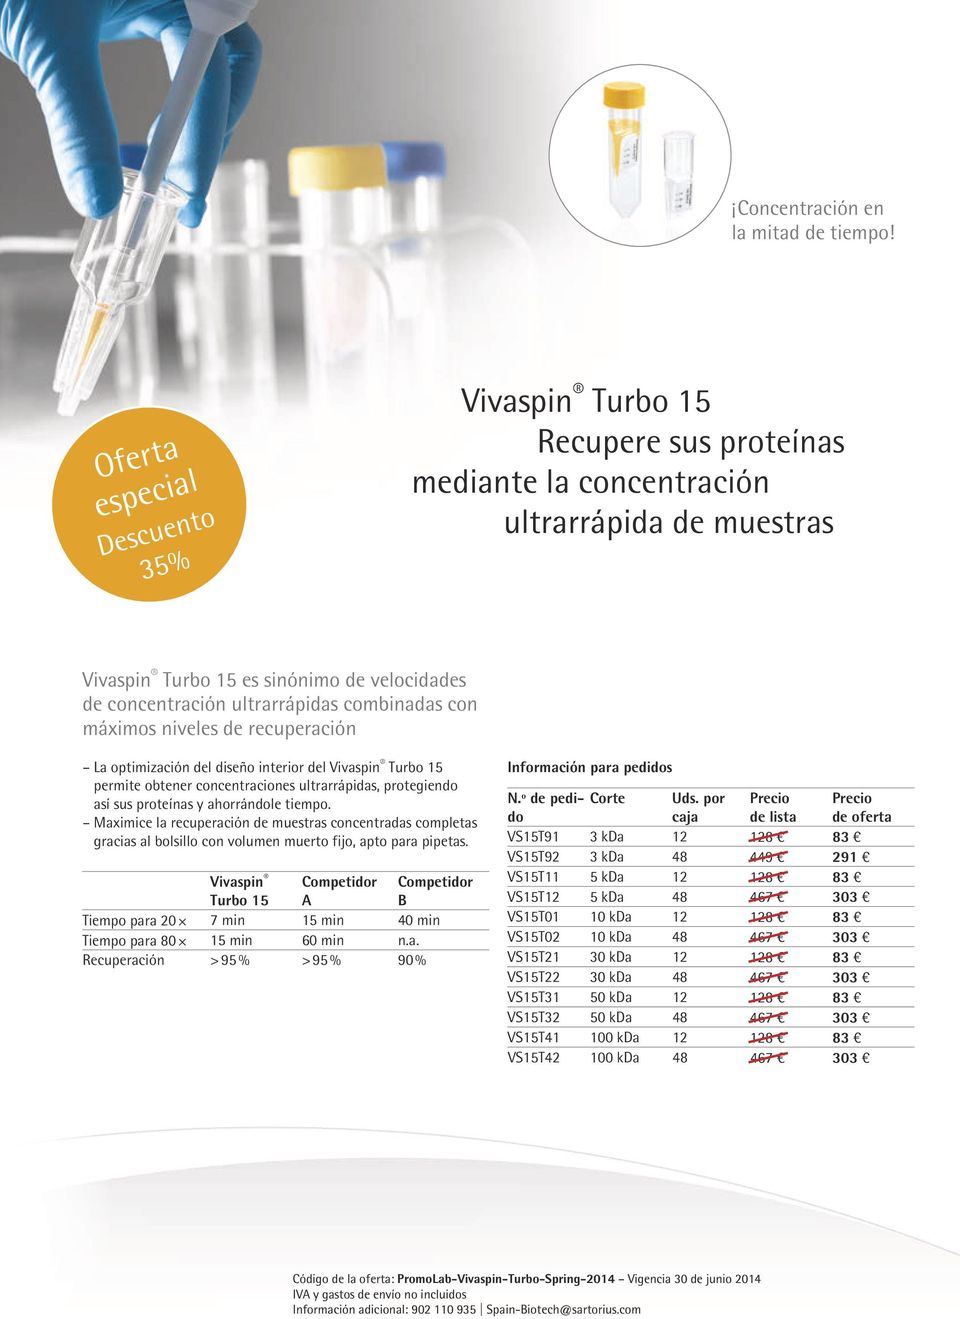 máximos niveles de recuperación La optimización del diseño interior del Vivaspin Turbo 15 permite obtener concentraciones ultrarrápidas, protegiendo así sus proteínas y ahorrándole tiempo.